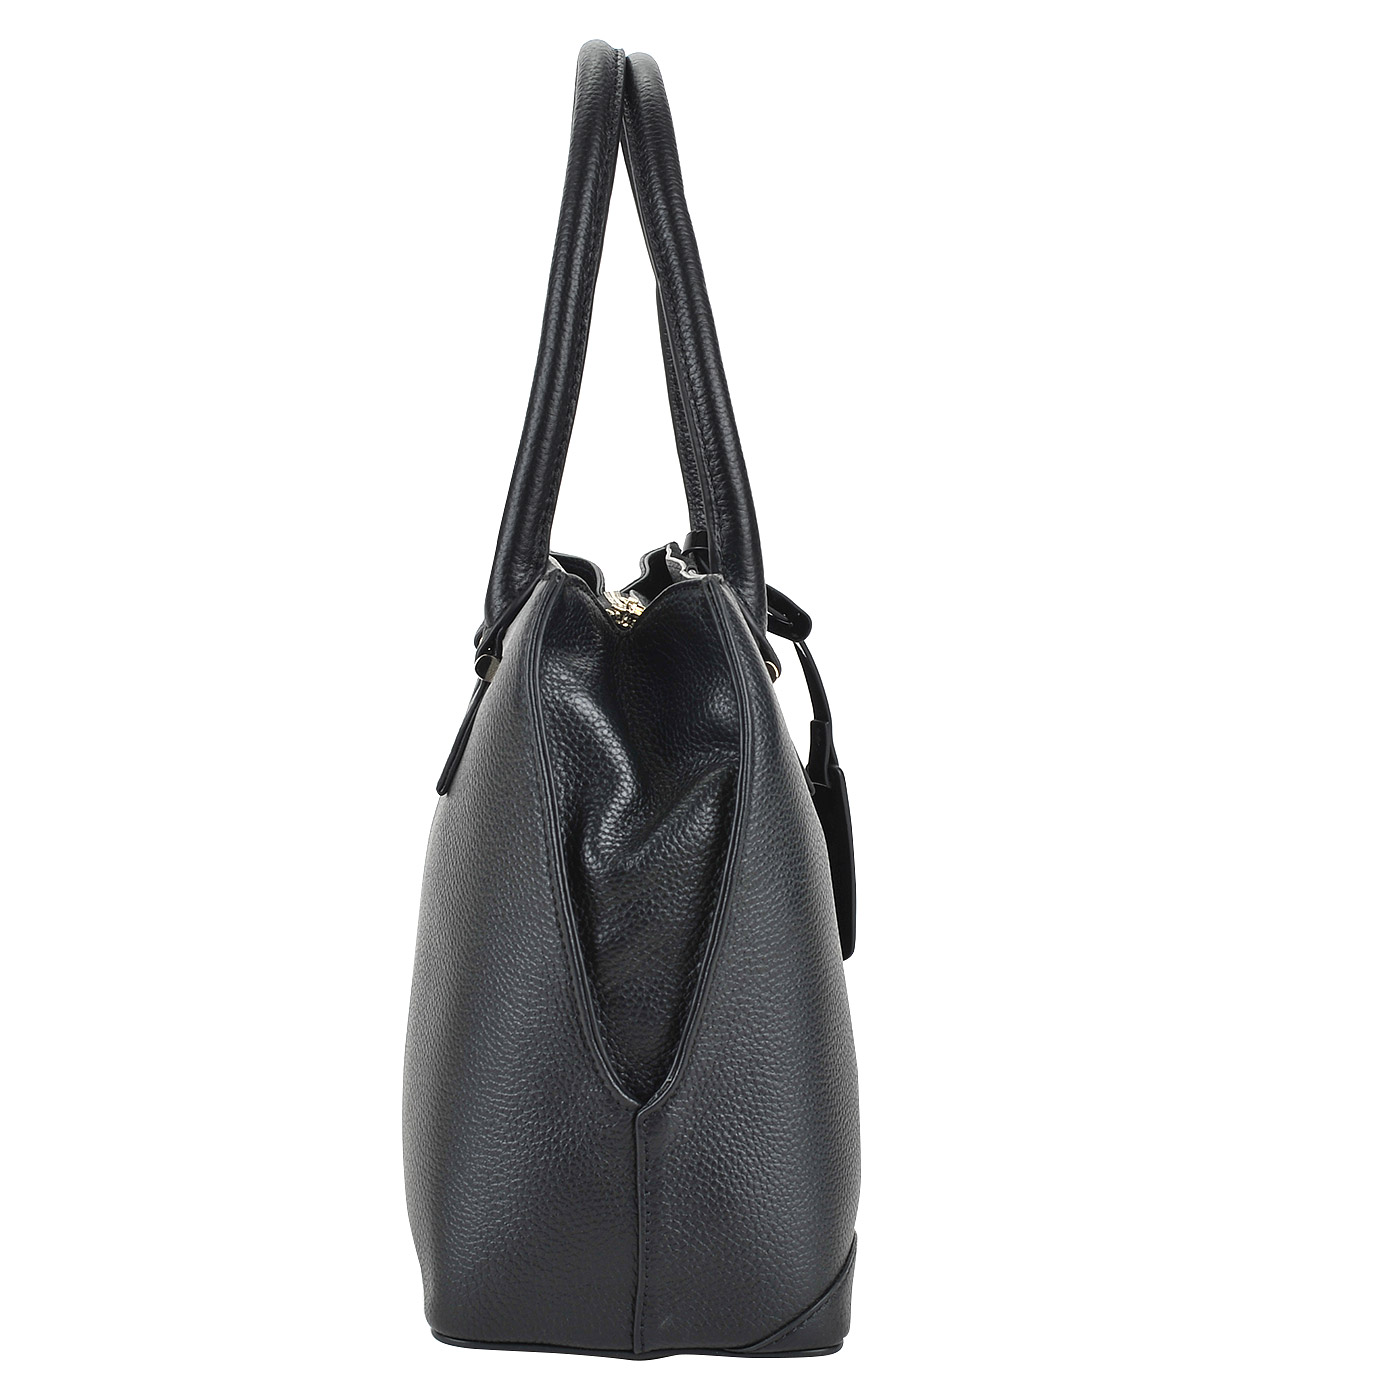 Черная кожаная сумка с декоративной аппликацией Fiato Dream 